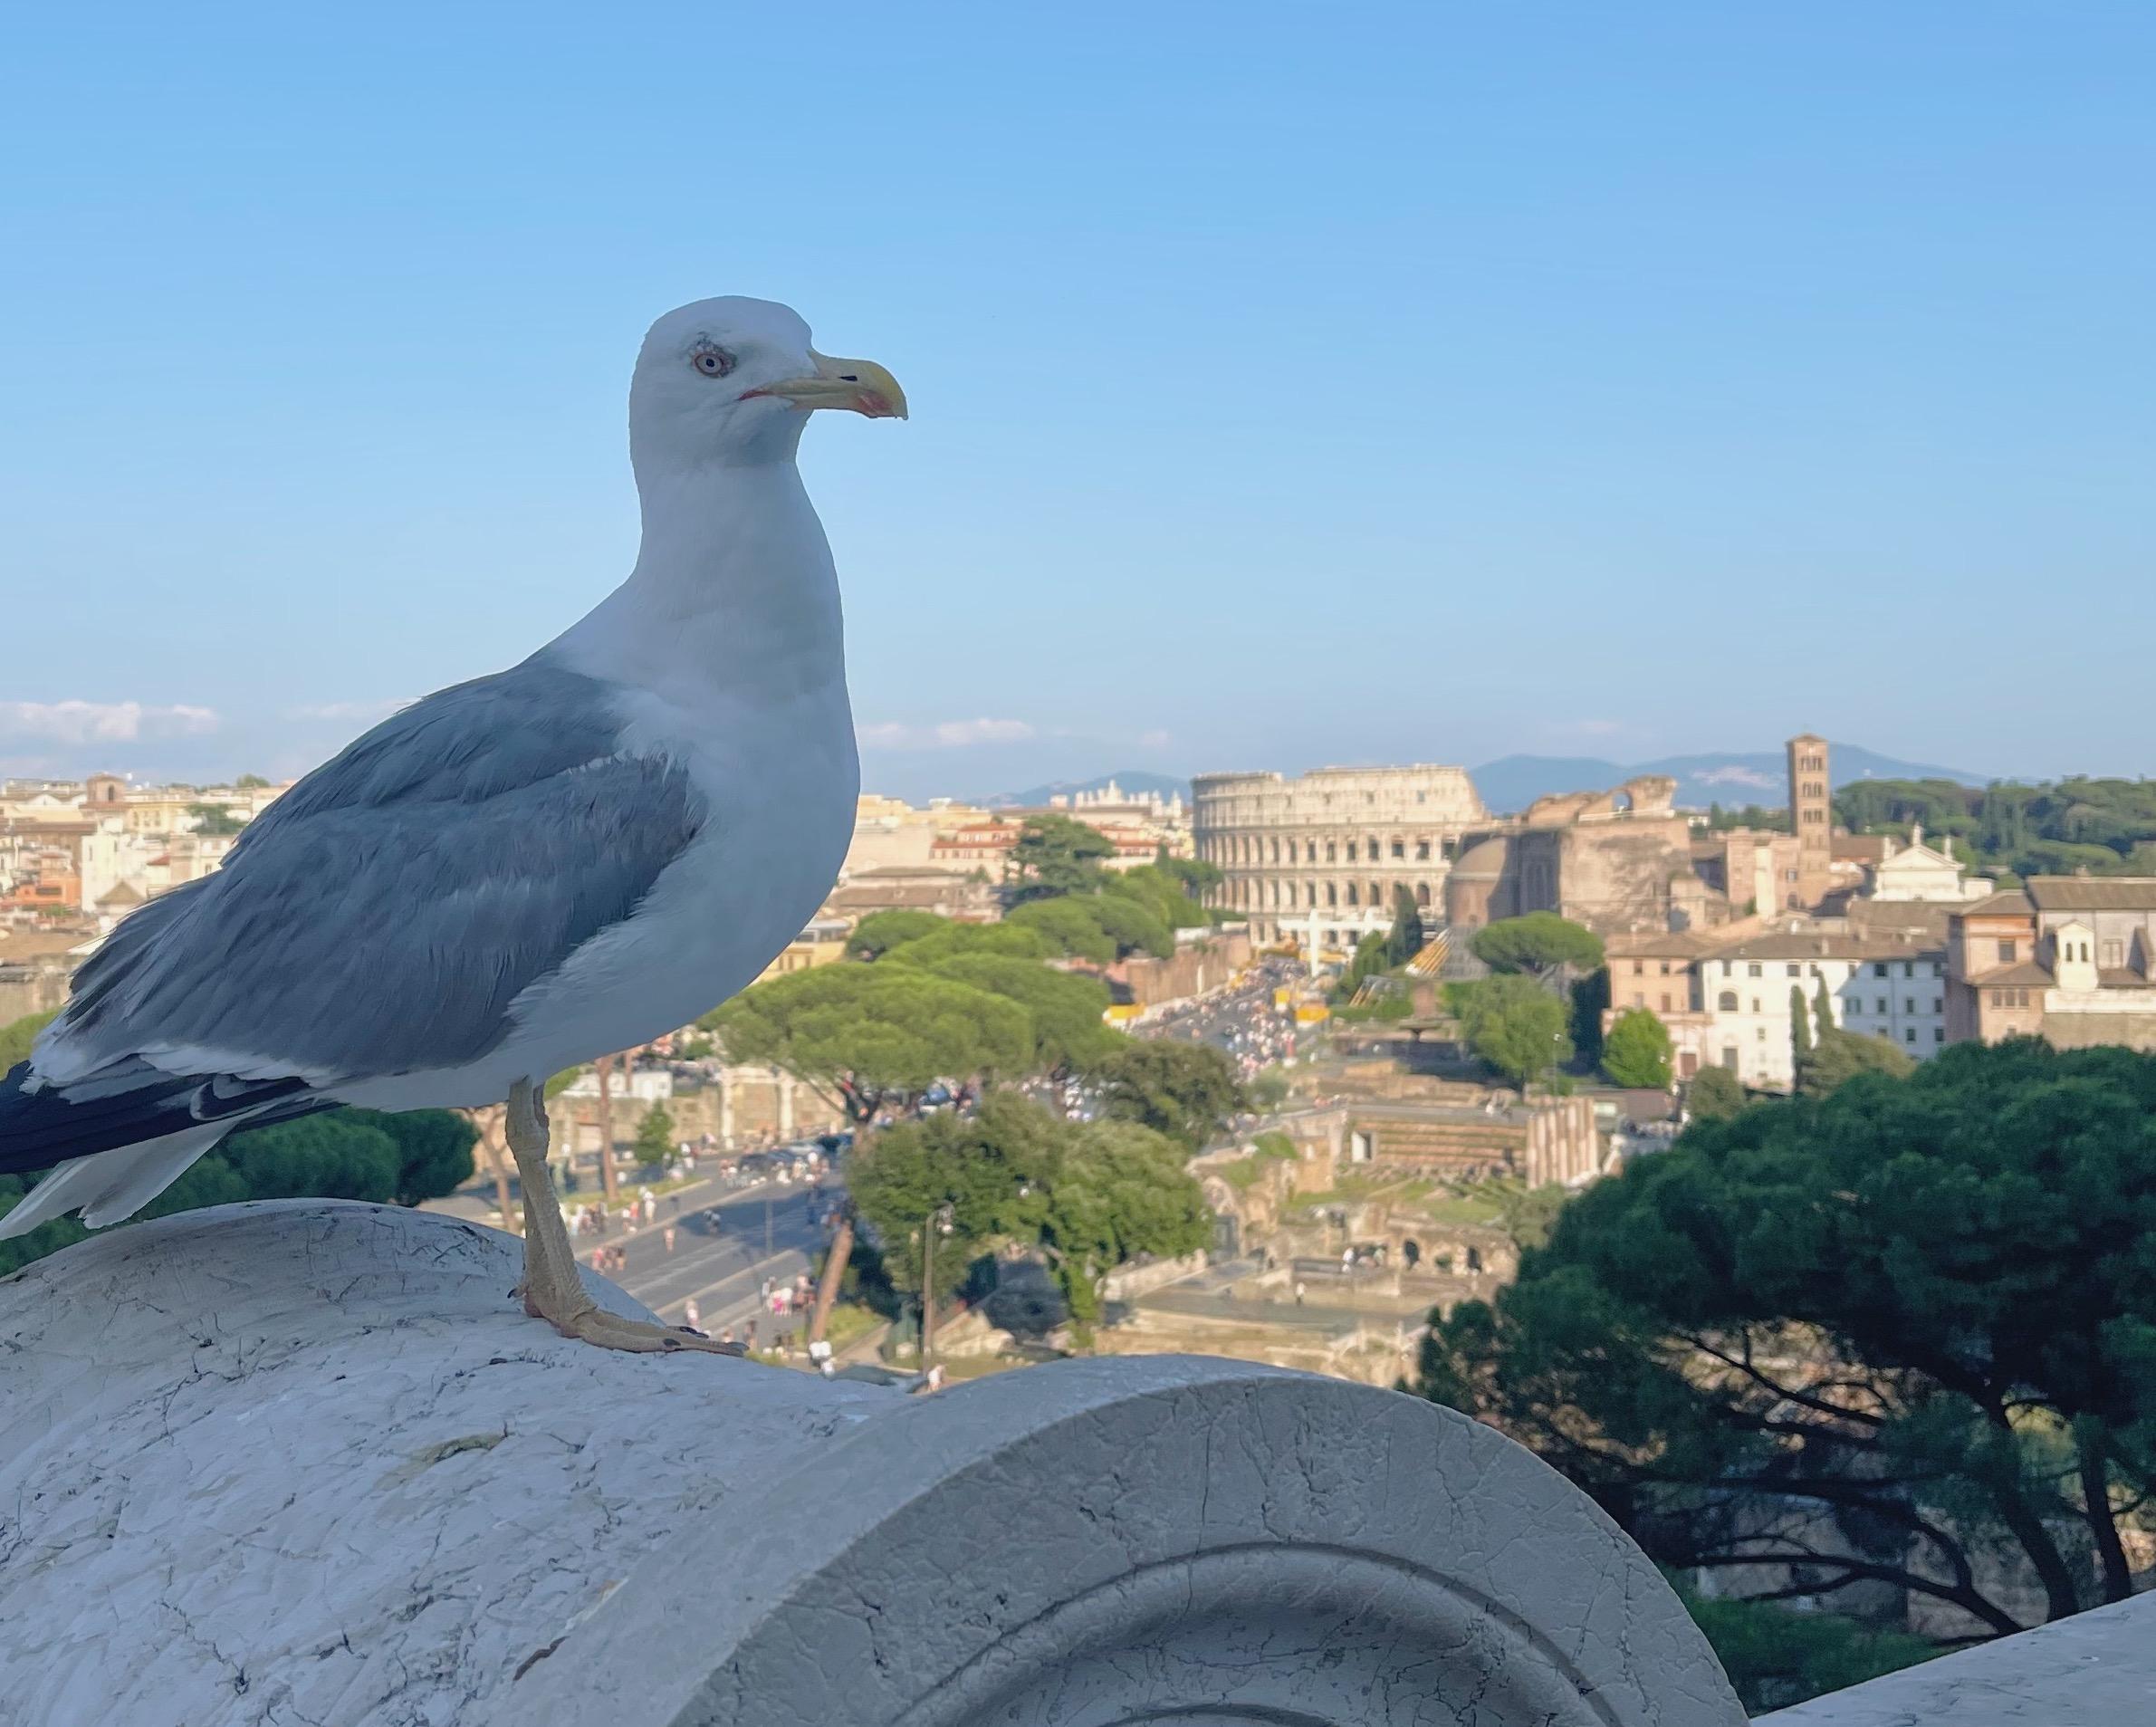 Le terrazze più panoramiche di Roma